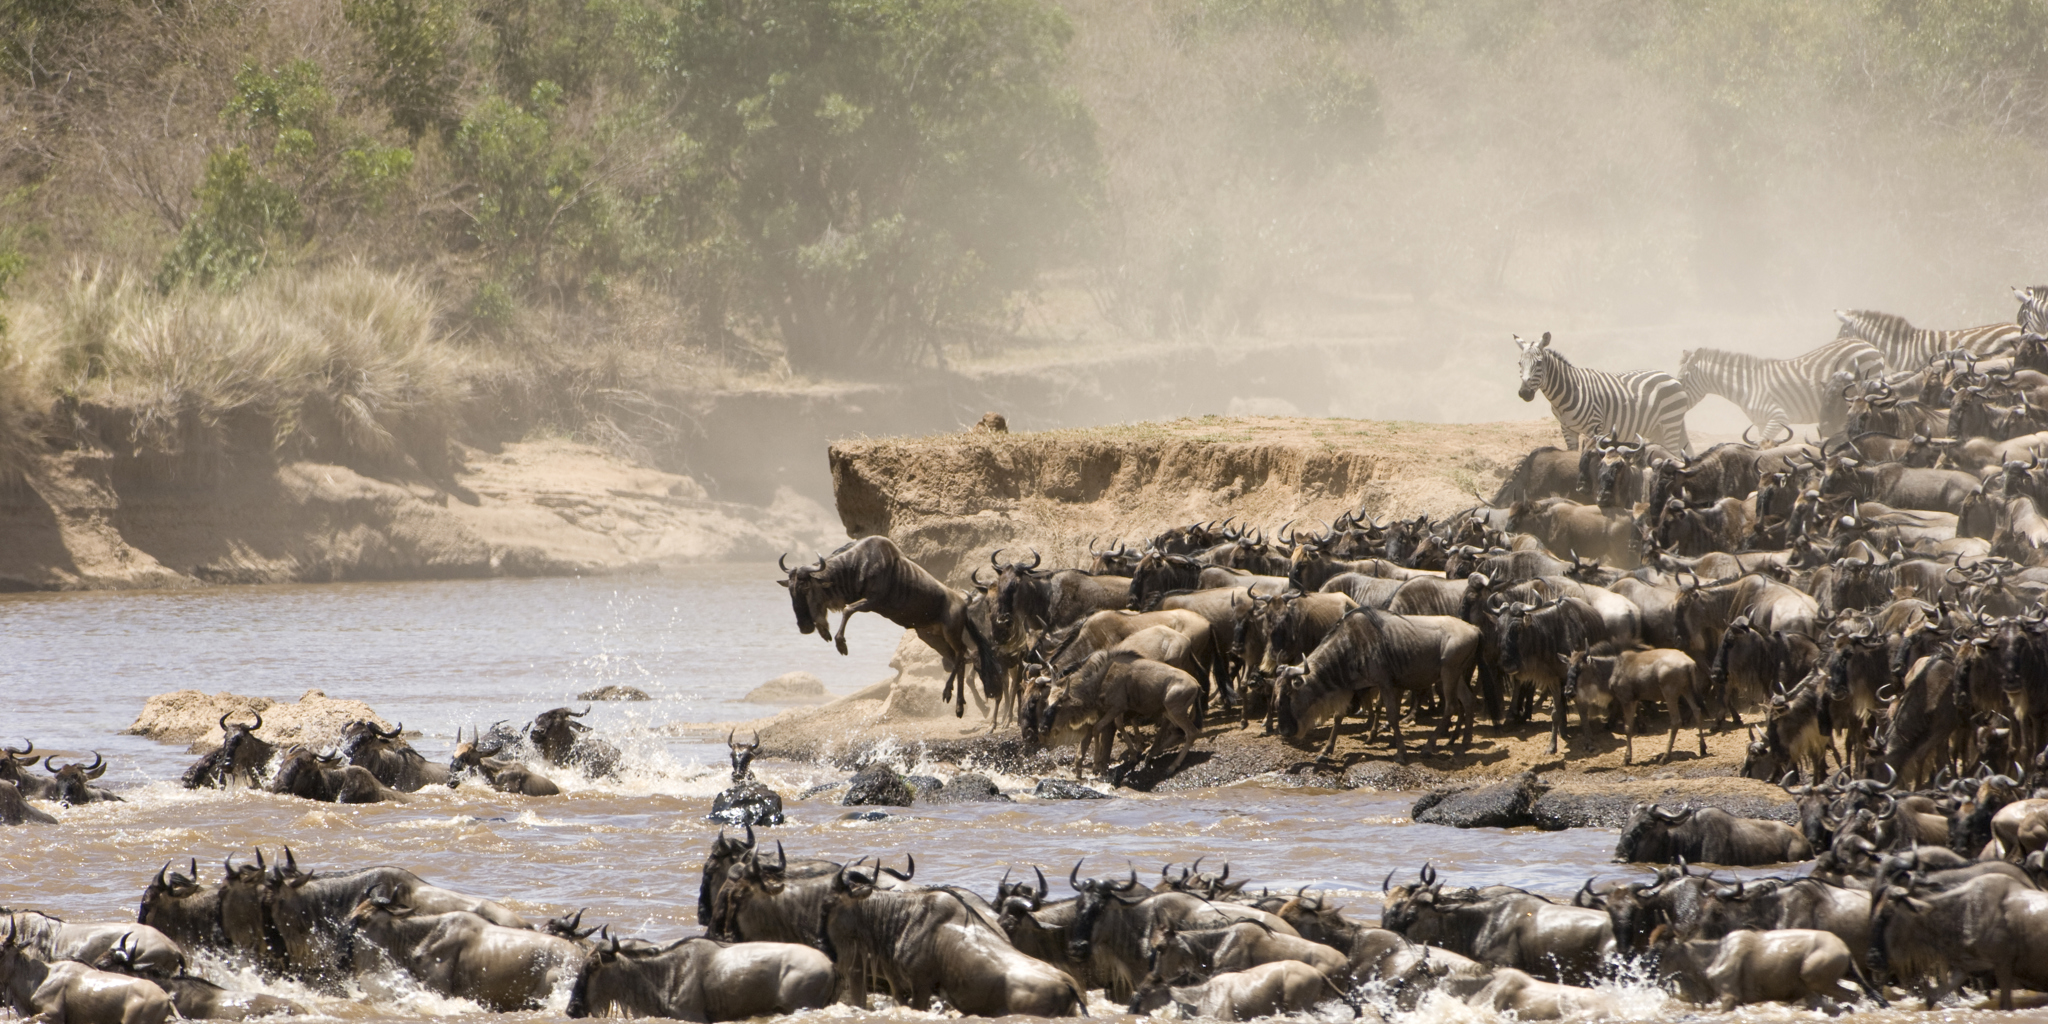 The great migration, Maasai Mara national reserve, Kenya